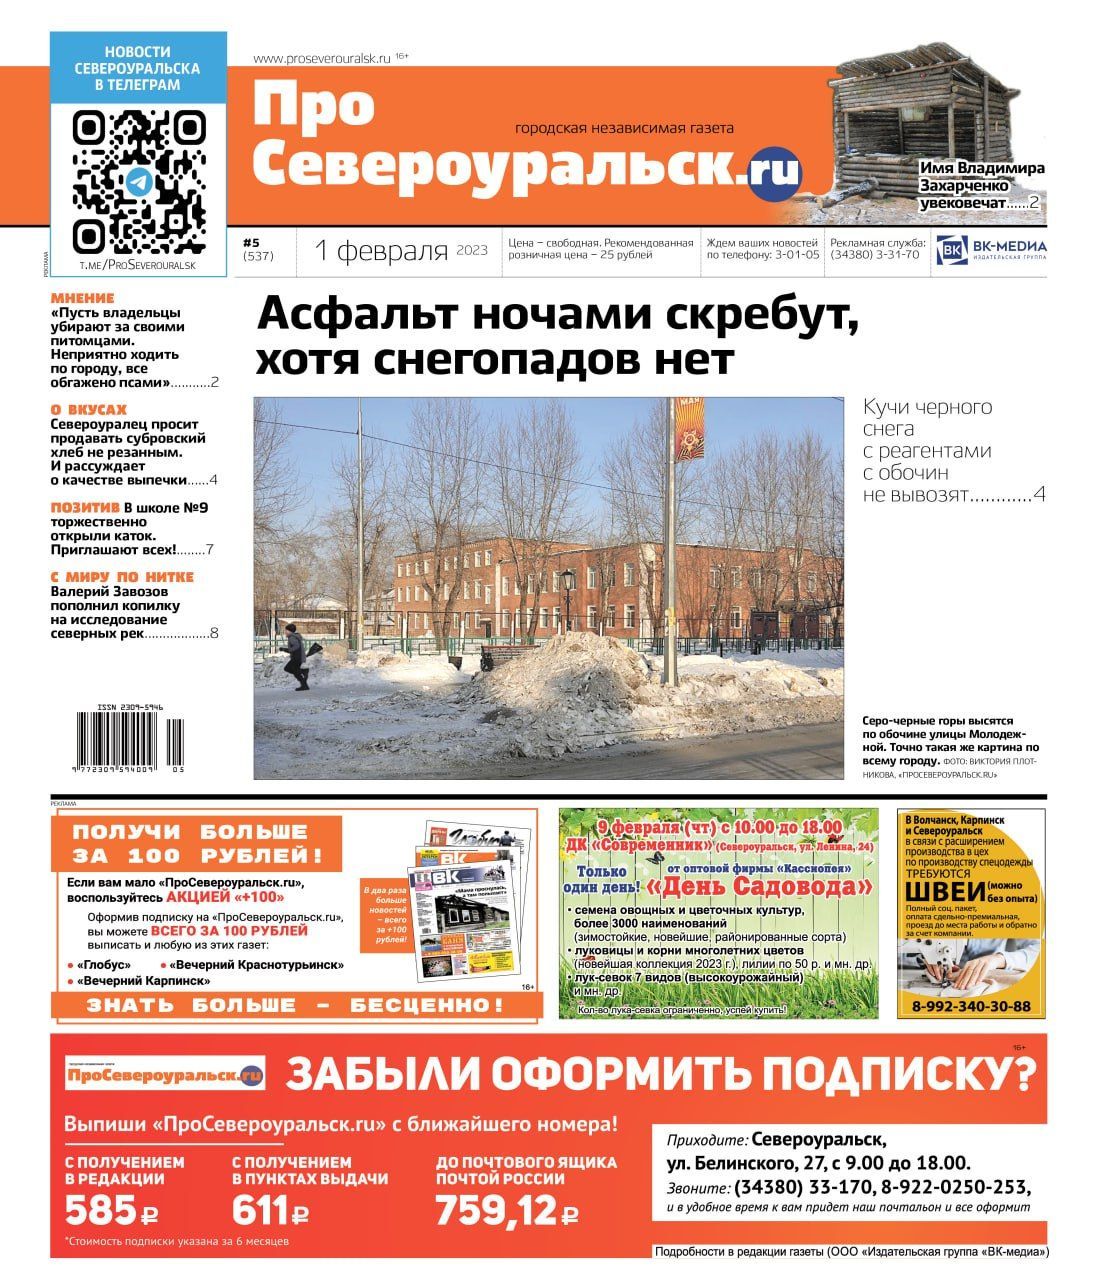 Асфальт скребут ночами. Имя Захарченко увековечат. Читайте газету!